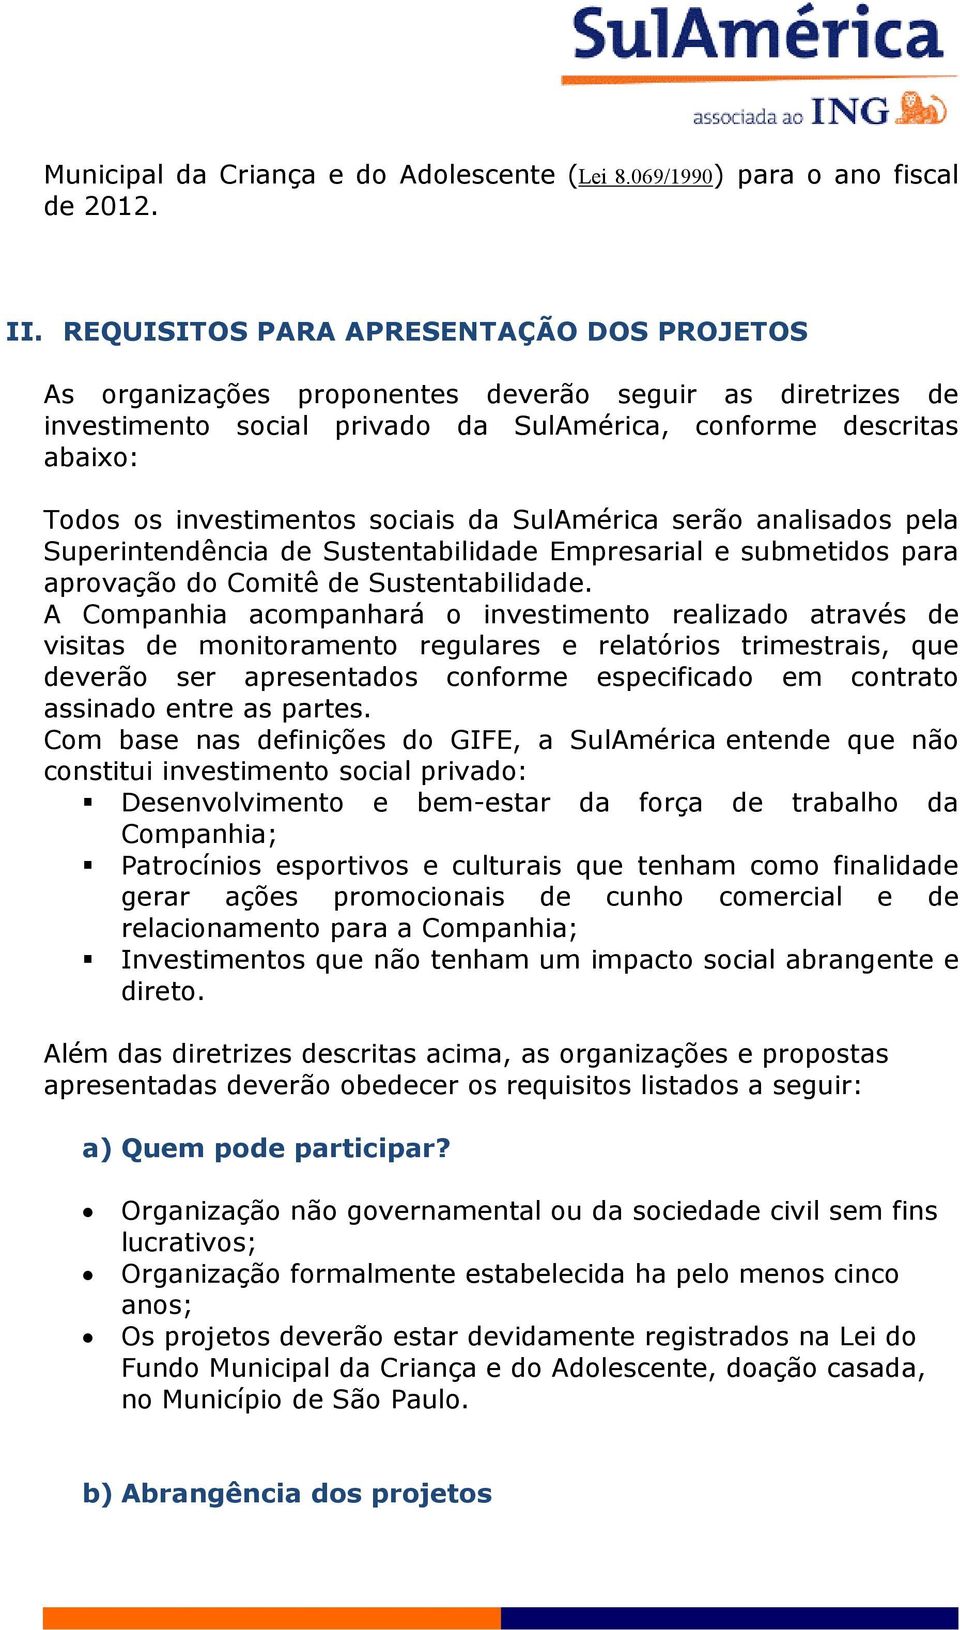 sociais da SulAmérica serão analisados pela Superintendência de Sustentabilidade Empresarial e submetidos para aprovação do Comitê de Sustentabilidade.